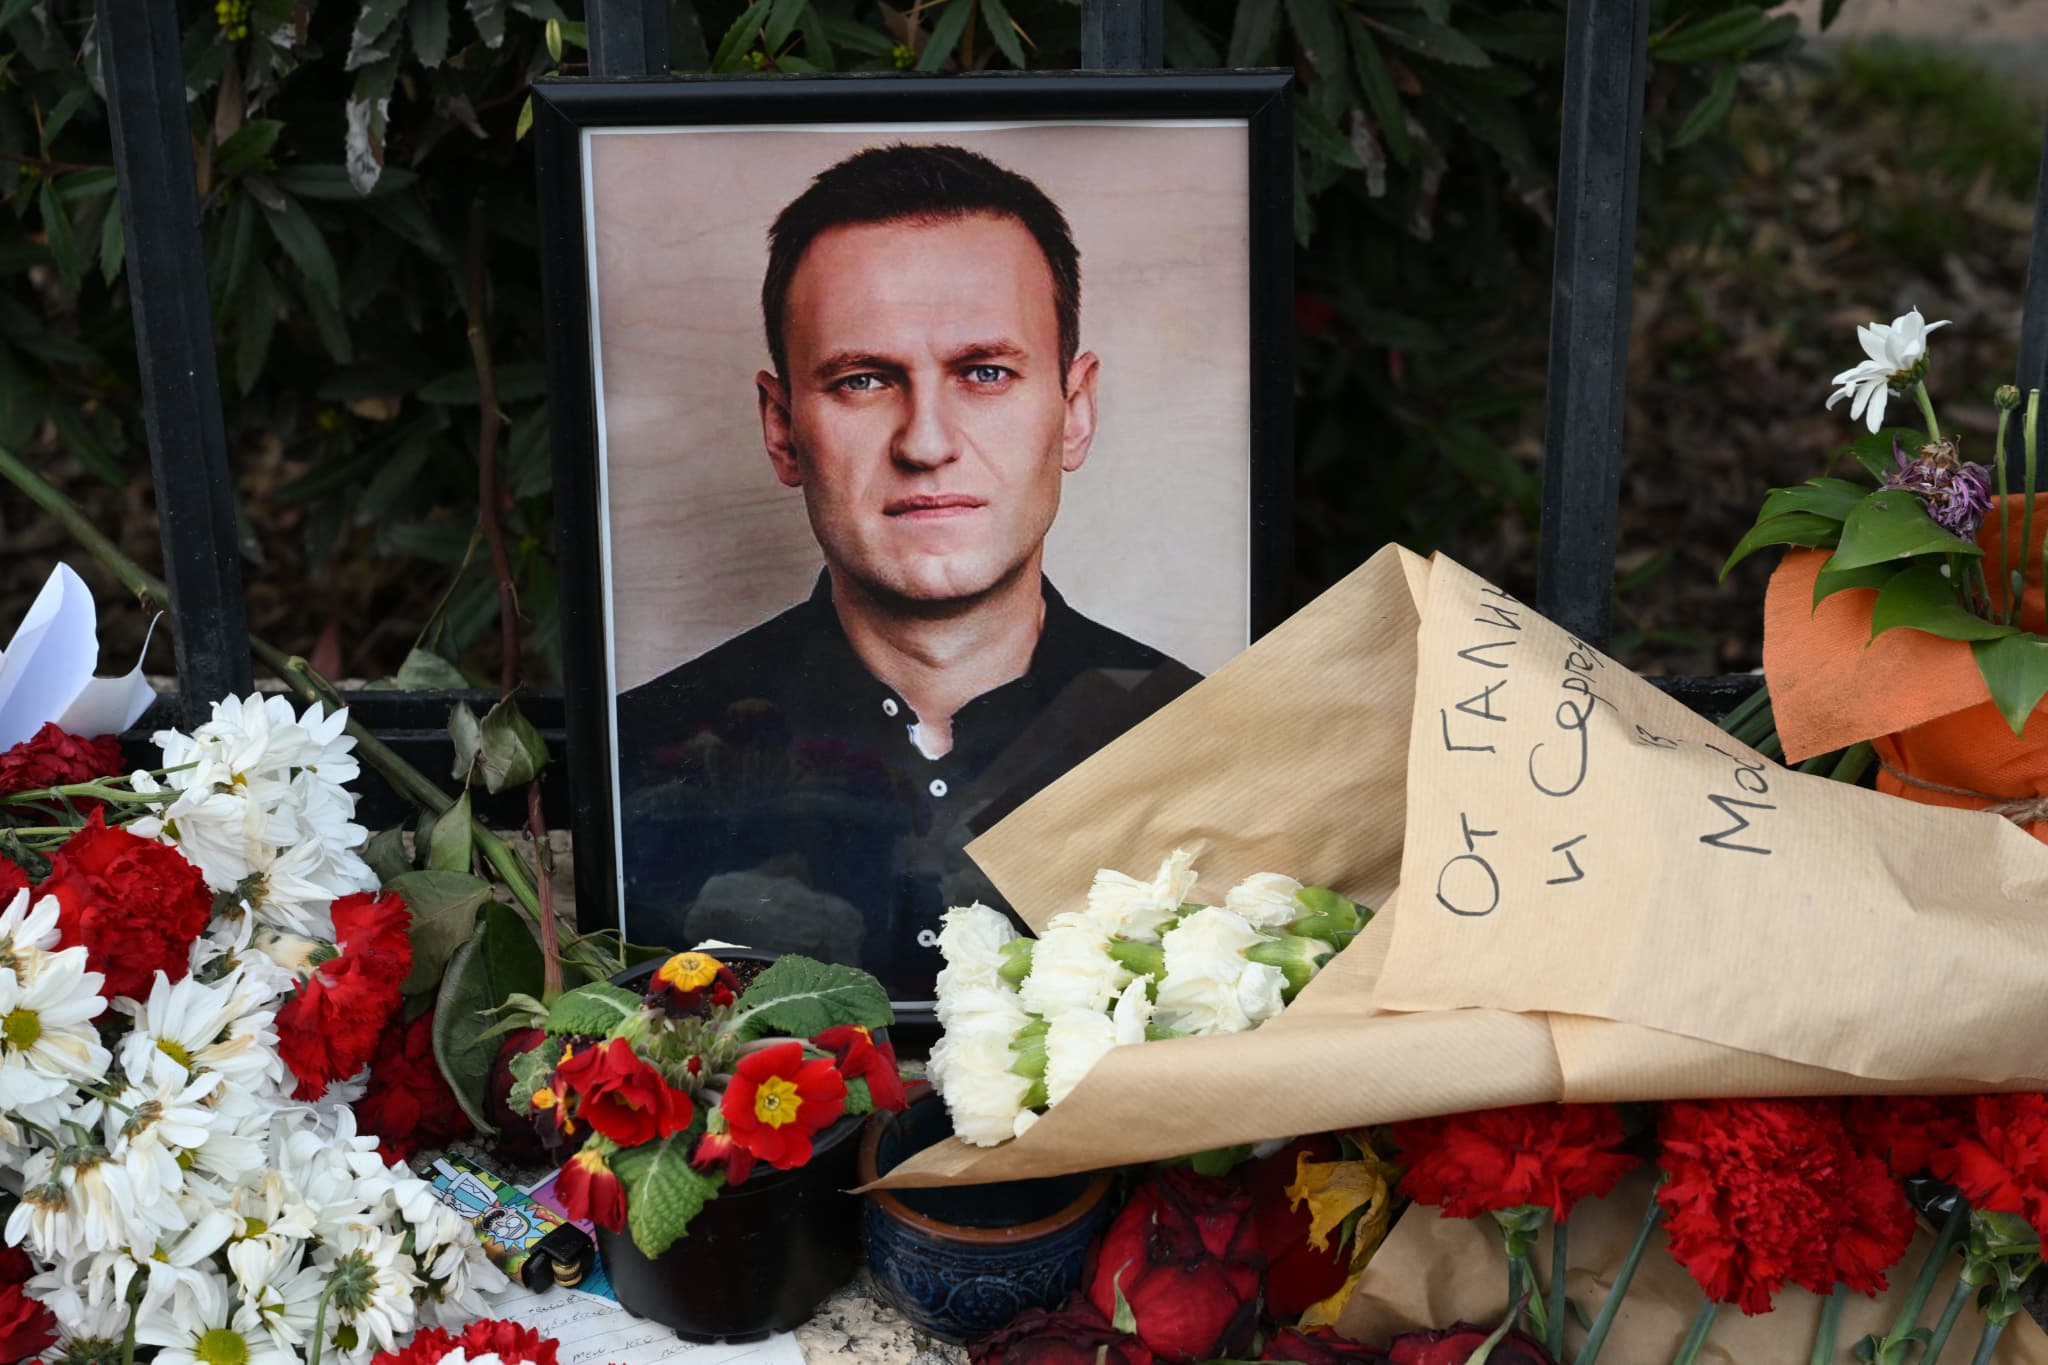 mort de navalny: poutine n'aurait pas commandité la mort de l'opposant selon le wall street journal